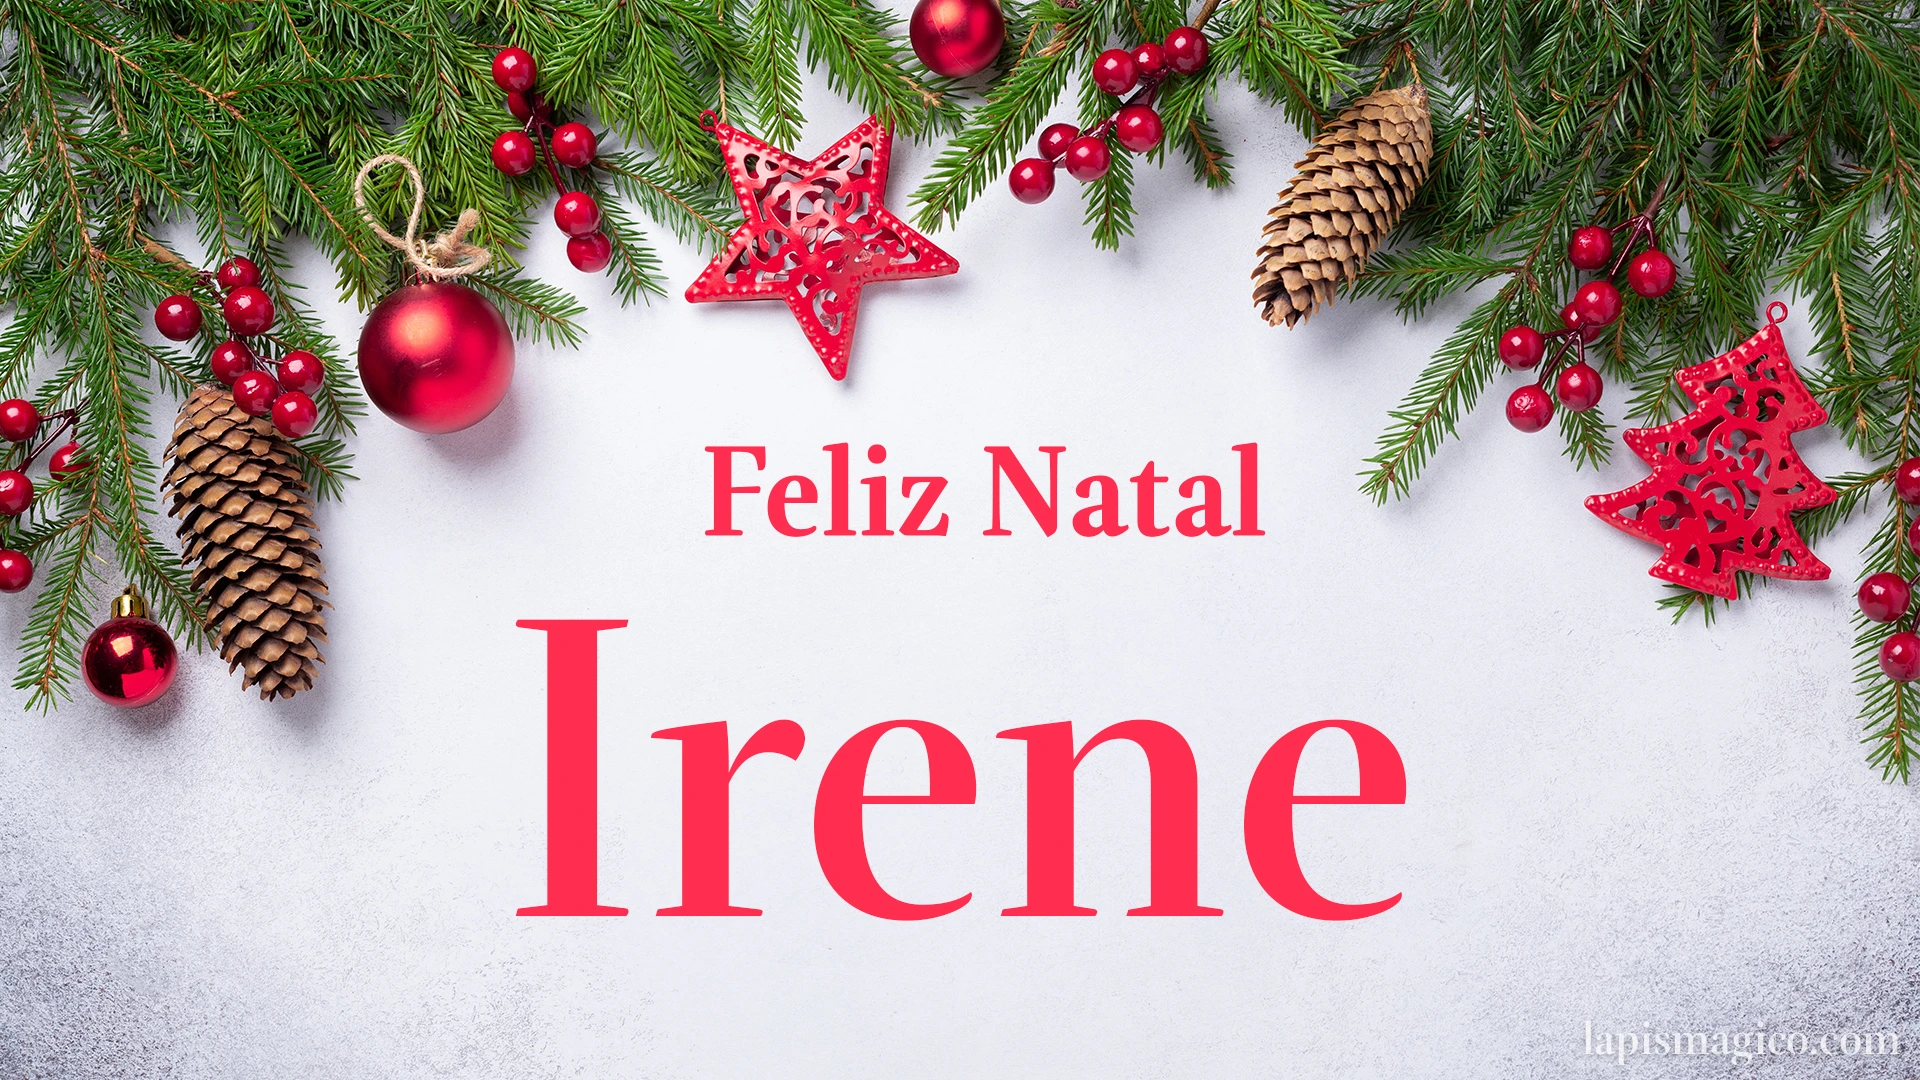 Oh Irene, cinco postais de Feliz Natal Postal com o teu nome